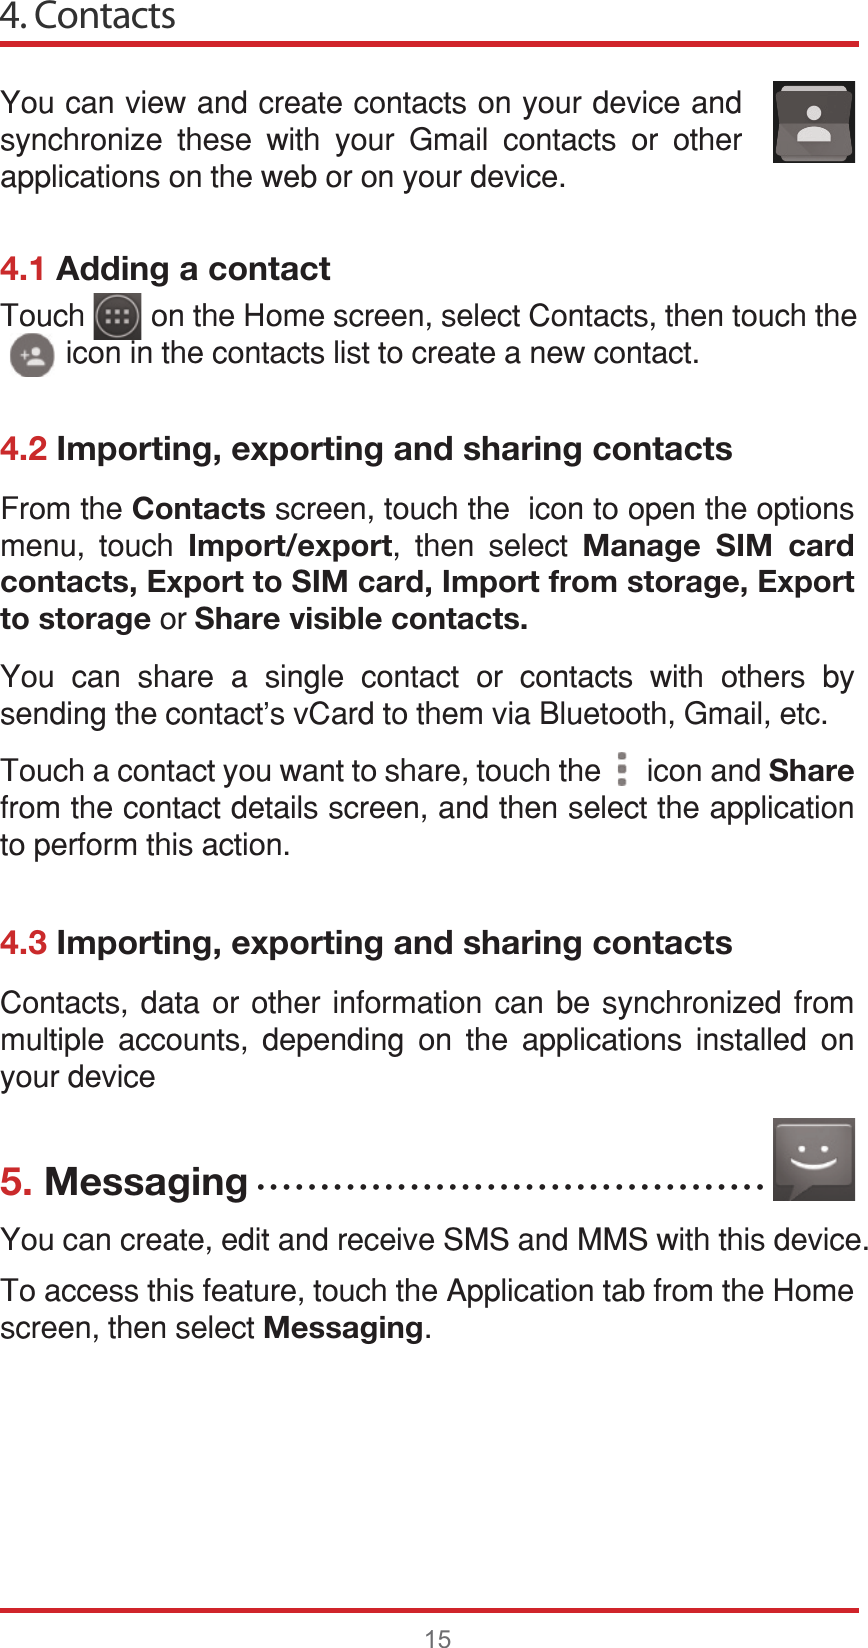 4. Contacts154.1 Adding a contact4.2 Importing, exporting and sharing contacts4.3 Importing, exporting and sharing contacts5. Messaging&lt;RXFDQYLHZDQGFUHDWHFRQWDFWVRQ\RXUGHYLFHDQGV\QFKURQL]H WKHVH ZLWK \RXU *PDLO FRQWDFWV RU RWKHUDSSOLFDWLRQVRQWKHZHERURQ\RXUGHYLFH&amp;RQWDFWV GDWD RU RWKHU LQIRUPDWLRQ FDQ EH V\QFKURQL]HG IURPPXOWLSOH DFFRXQWV GHSHQGLQJ RQ WKH DSSOLFDWLRQV LQVWDOOHG RQ\RXUGHYLFH&lt;RXFDQFUHDWHHGLWDQGUHFHLYH606DQG006ZLWKWKLVGHYLFH7RDFFHVVWKLVIHDWXUHWRXFKWKH$SSOLFDWLRQWDEIURPWKH+RPHVFUHHQWKHQVHOHFWMessaging)URPWKHContactsVFUHHQWRXFKWKHLFRQWRRSHQWKHRSWLRQVPHQX WRXFK Import/export WKHQ VHOHFW Manage SIM card contacts, Export to SIM card, Import from storage, Export to storageRUShare visible contacts.&lt;RX FDQ VKDUH D VLQJOH FRQWDFW RU FRQWDFWV ZLWK RWKHUV E\VHQGLQJWKHFRQWDFWVY&amp;DUGWRWKHPYLD%OXHWRRWK*PDLOHWF7RXFKDFRQWDFW\RXZDQWWRVKDUHWRXFKWKHLFRQDQGShareIURPWKHFRQWDFWGHWDLOVVFUHHQDQGWKHQVHOHFWWKHDSSOLFDWLRQWRSHUIRUPWKLVDFWLRQ7RXFKRQWKH+RPHVFUHHQVHOHFW&amp;RQWDFWVWKHQWRXFKWKHLFRQLQWKHFRQWDFWVOLVWWRFUHDWHDQHZFRQWDFWĆĆĆĆĆĆĆĆĆĆĆĆĆĆĆĆĆĆĆĆĆĆĆĆĆĆĆĆĆĆĆĆĆĆĆĆĆĆĆĆ